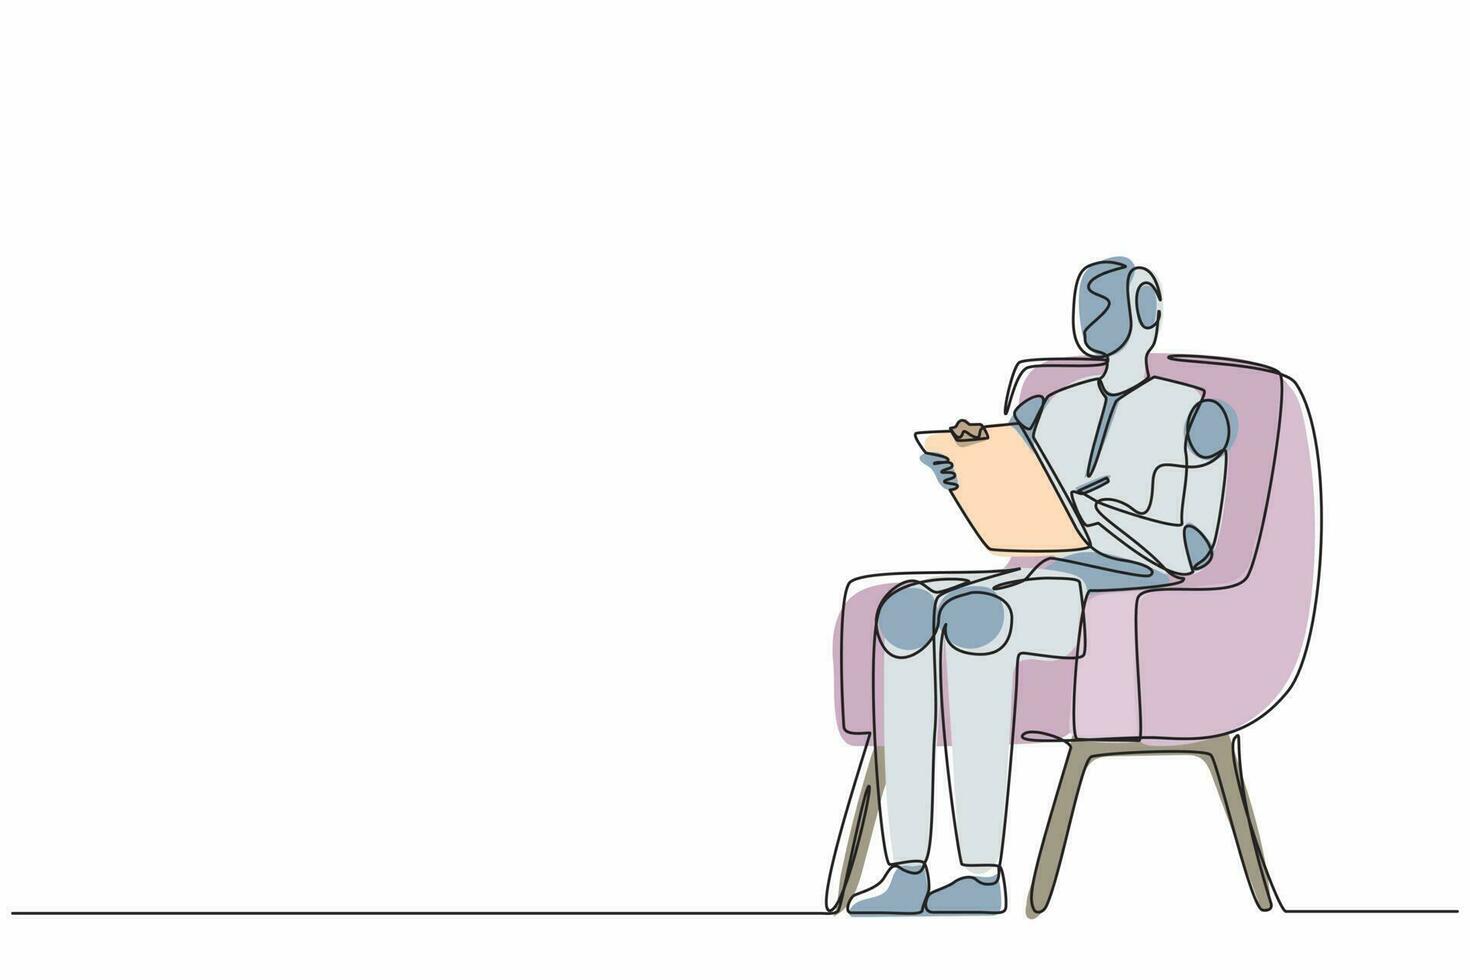 robots de dibujo de una sola línea continua sentados en una silla y escribiendo en el portapapeles. robótica moderna tecnología de inteligencia artificial. industria de la tecnología electrónica. vector de diseño gráfico de dibujo de una línea